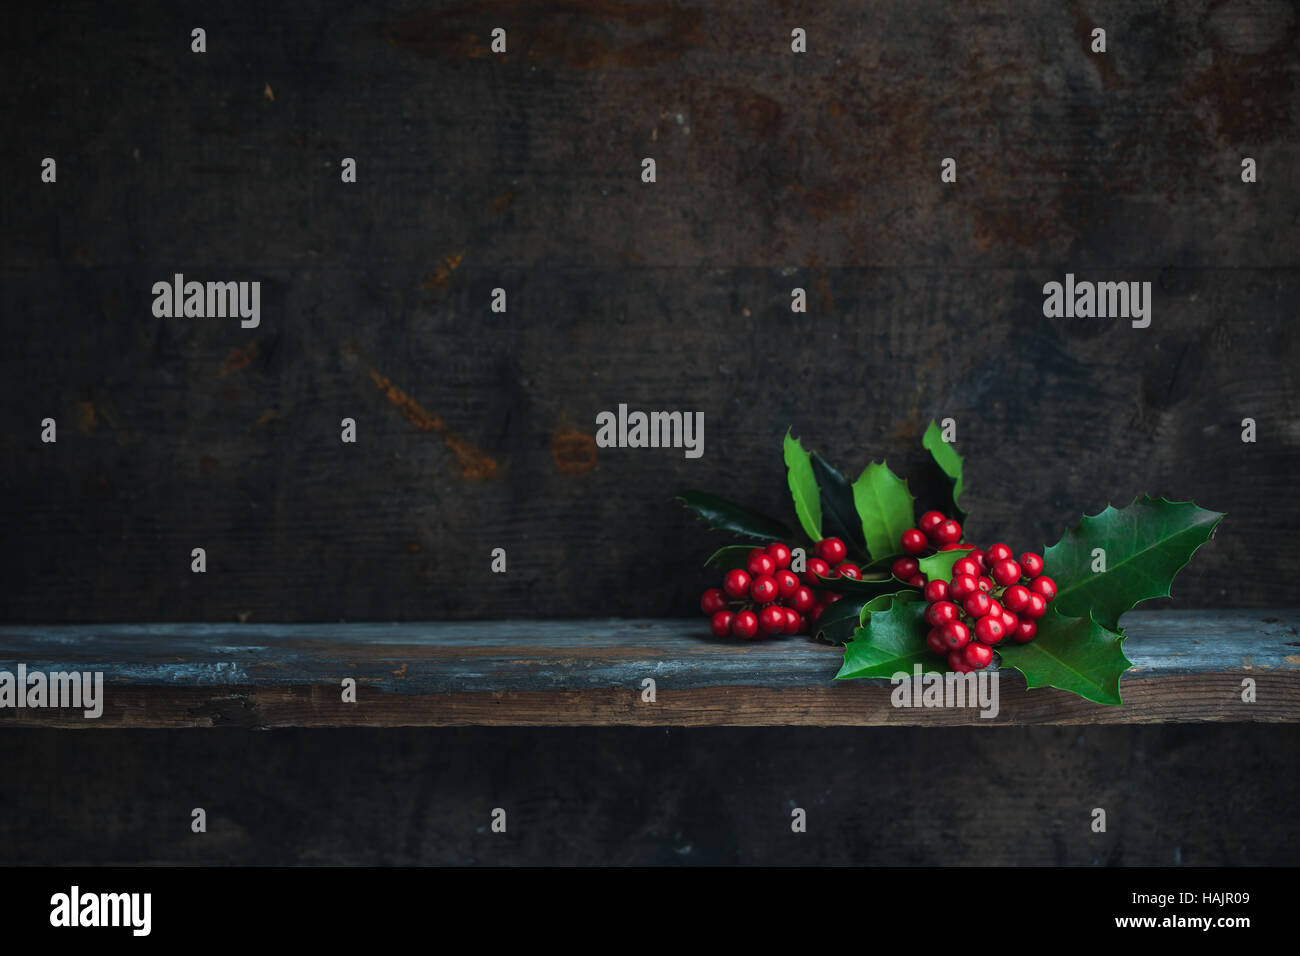 Rameau de houx de Noël. Décoration de Noël aux fruits rouges placés sur une planche en bois. Banque D'Images